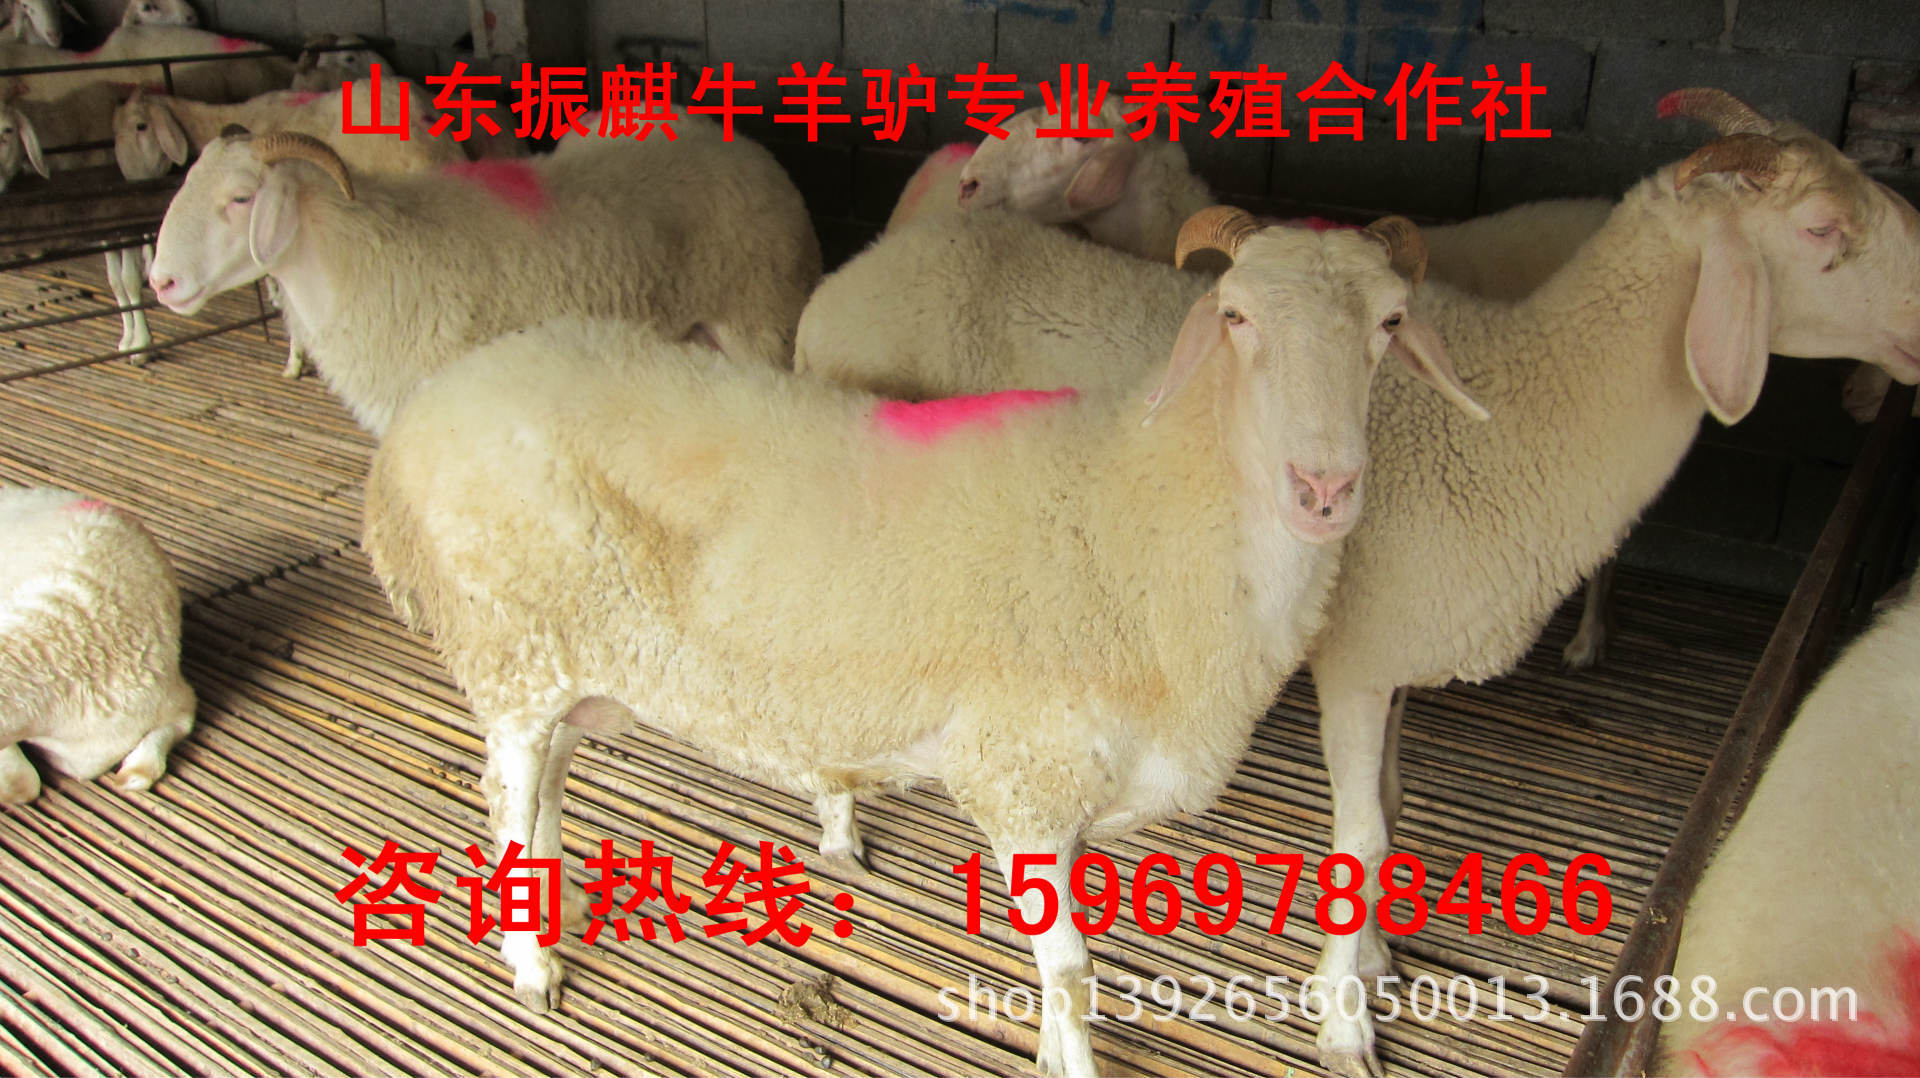 羊-安徽安庆小尾寒羊齐全去哪买羊不会被骗 哪